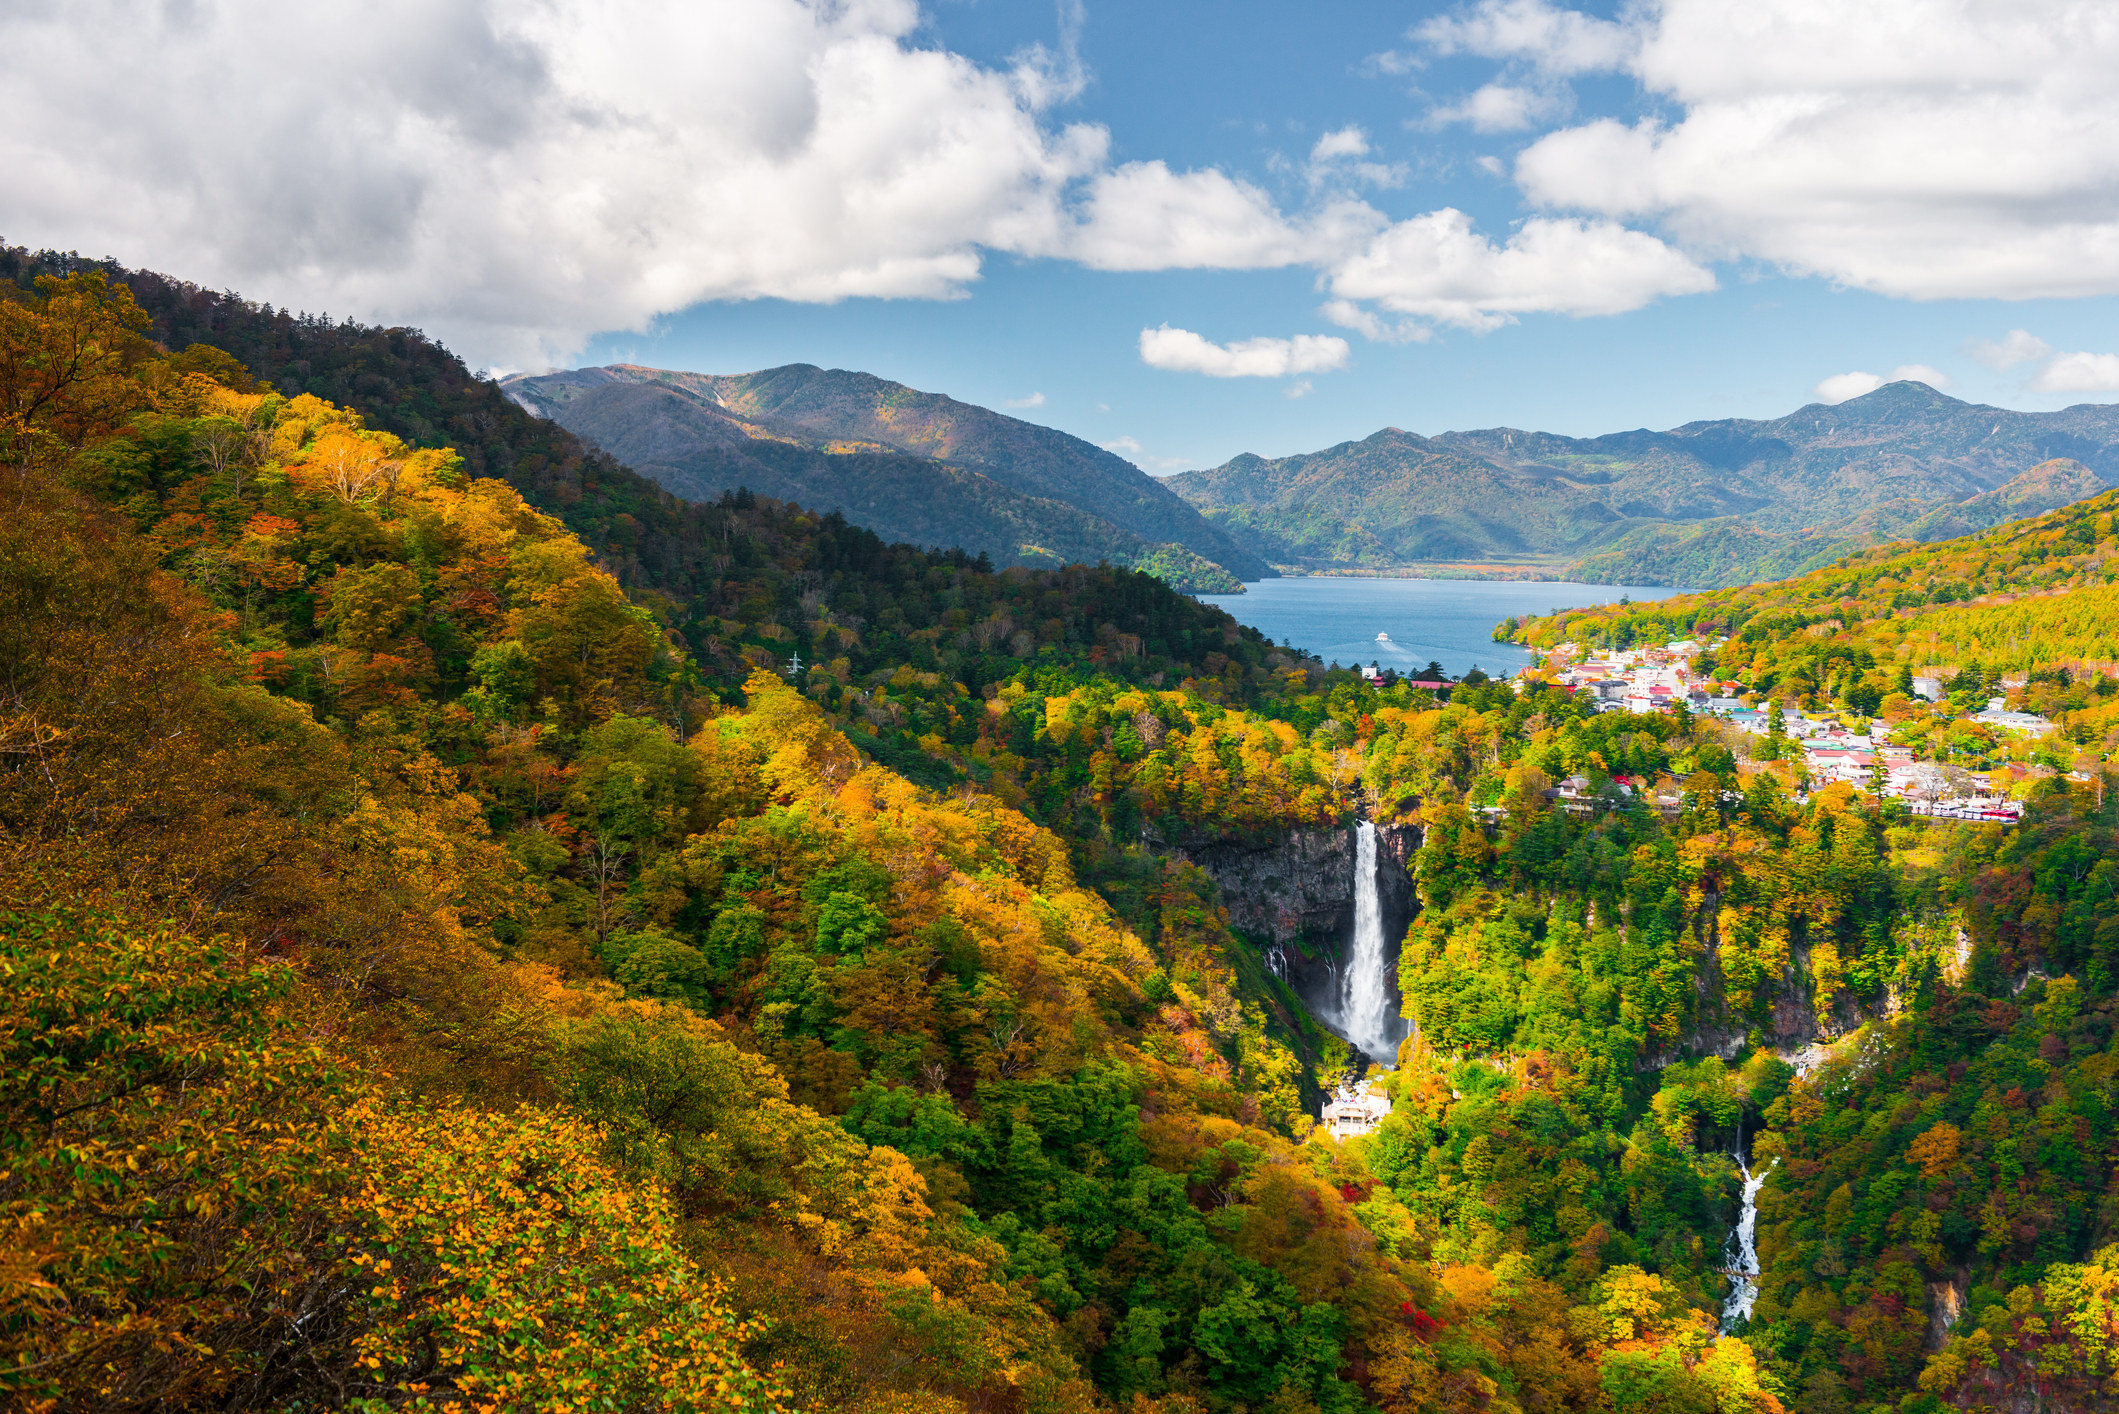 Fall colors and waterfalls in Nikko, Japan.